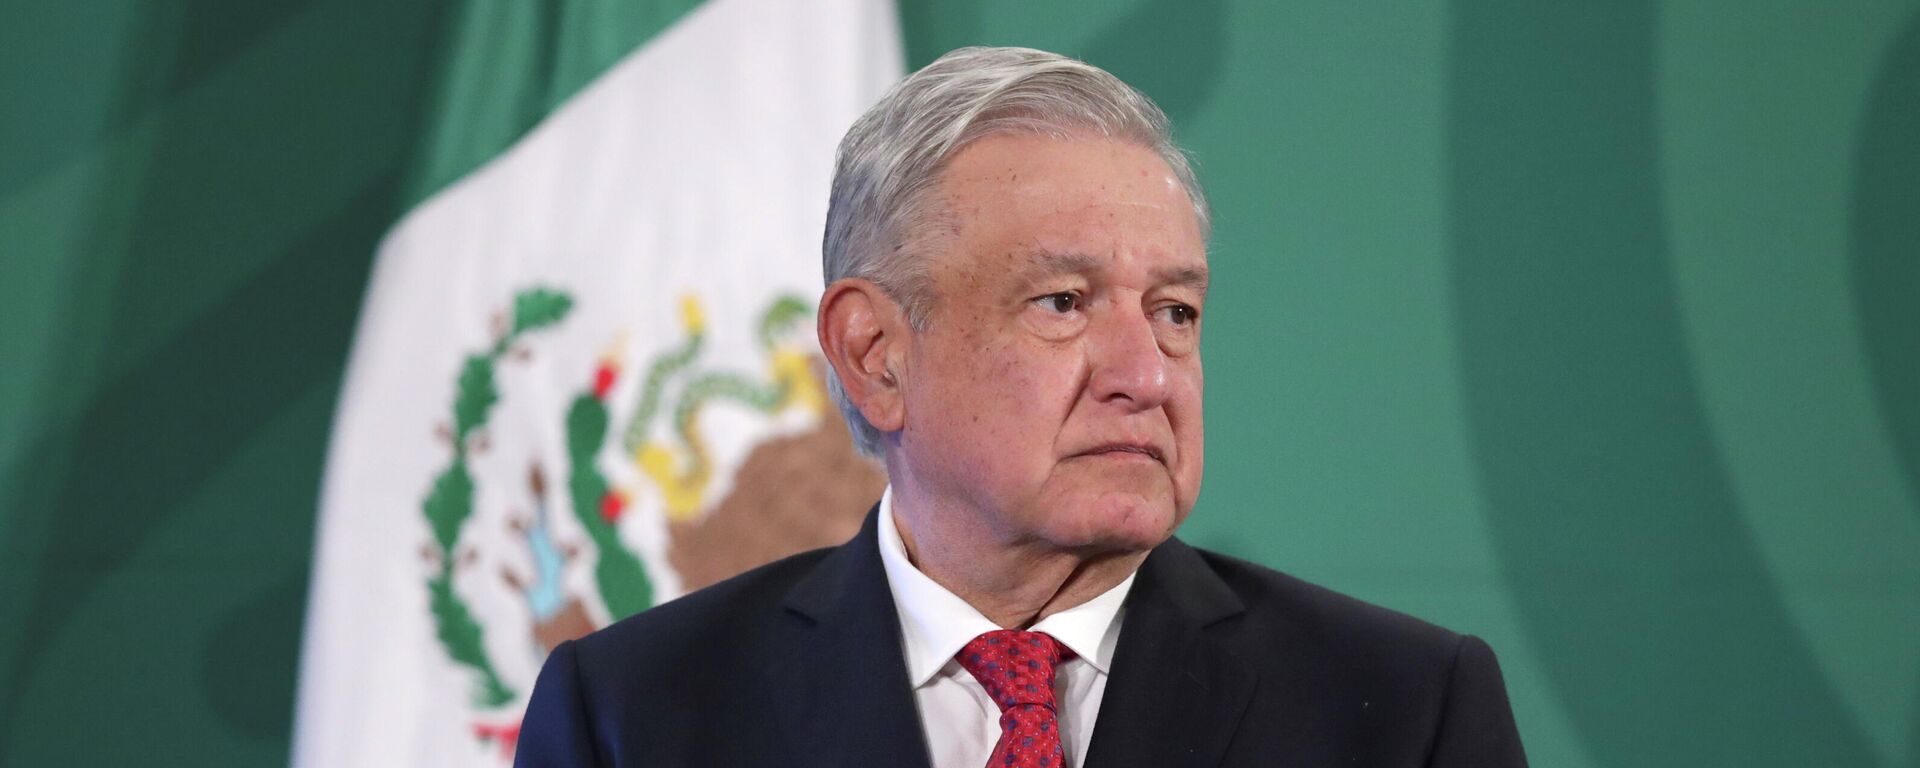 Andrés Manuel López Obrador, presidente de México - Sputnik Mundo, 1920, 04.05.2021